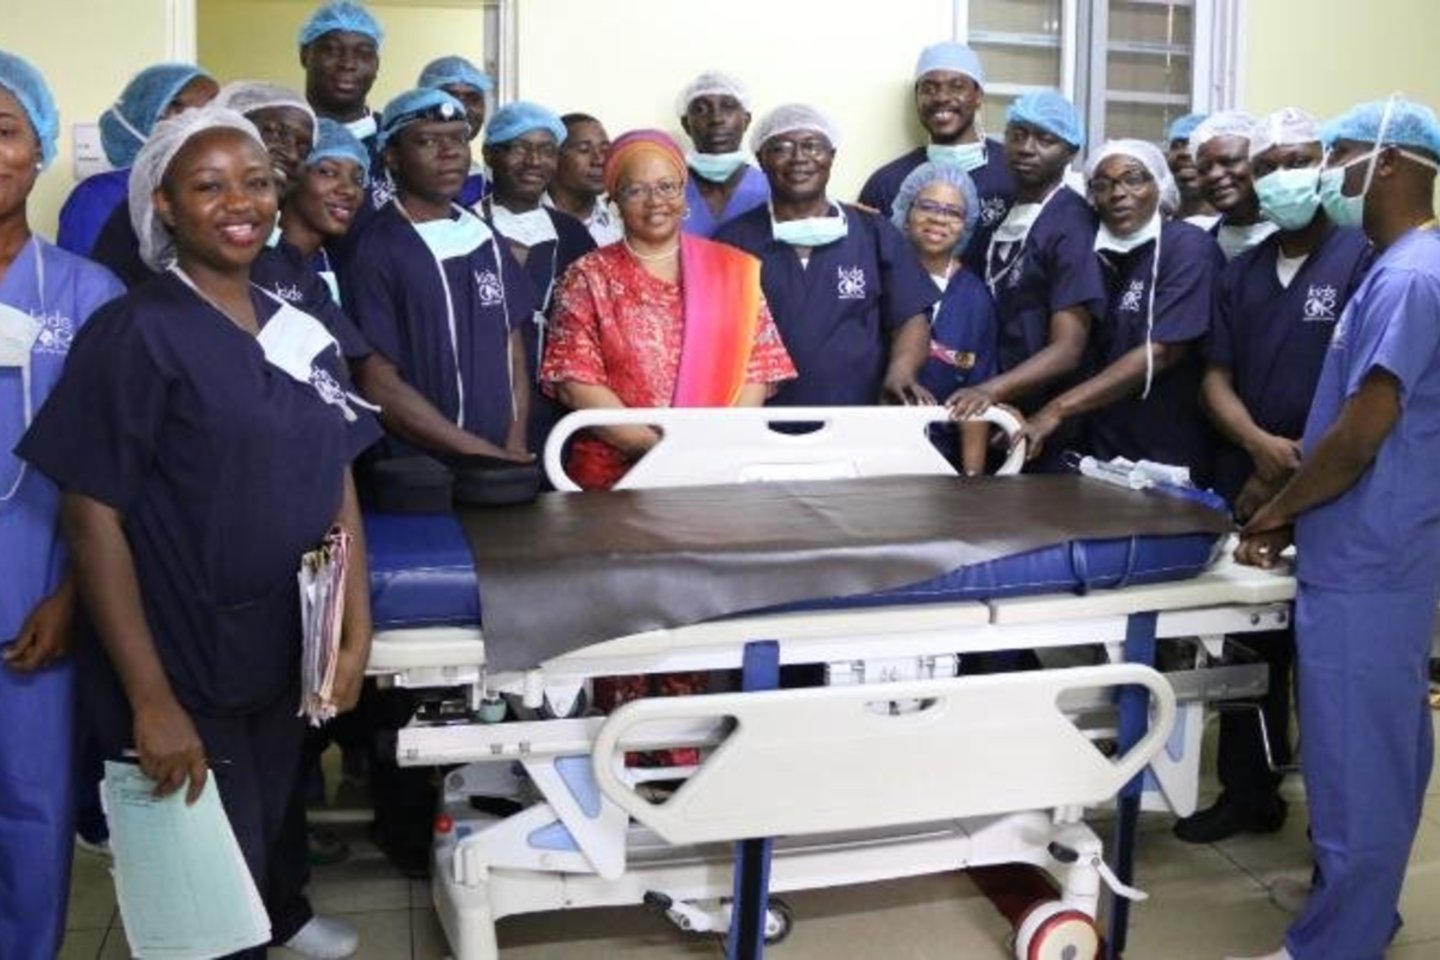  78 gydytojų komanda Nigerijos sostinėje Abudžoje lapkričio mėnesį atliko sėkmingą Siamo dvynių atskyrimo operaciją.<br> Nacionalinės Abudžos ligoninės nuotr.